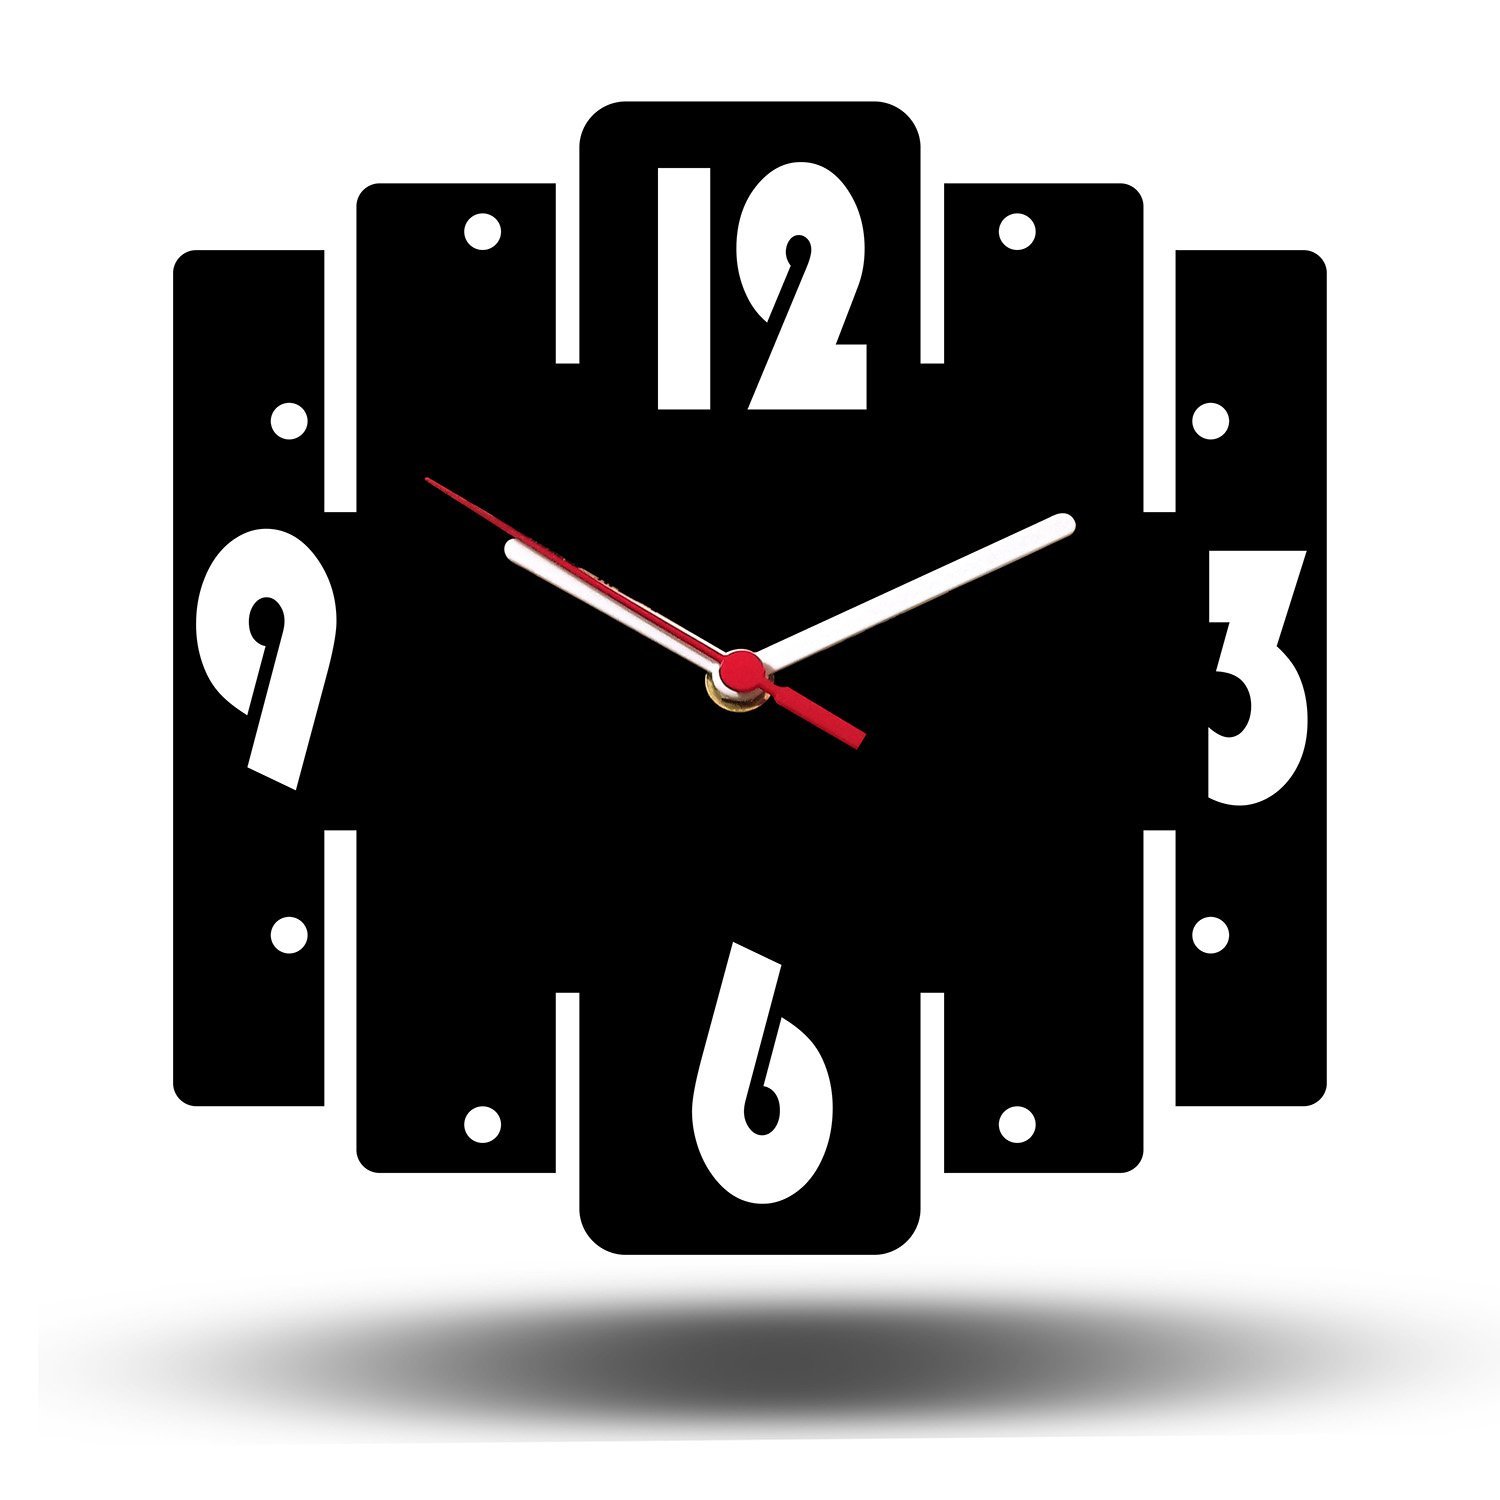 Relógio De Parede Retro Mdf Preto 25x25cm Quartz Tic Tac - 1